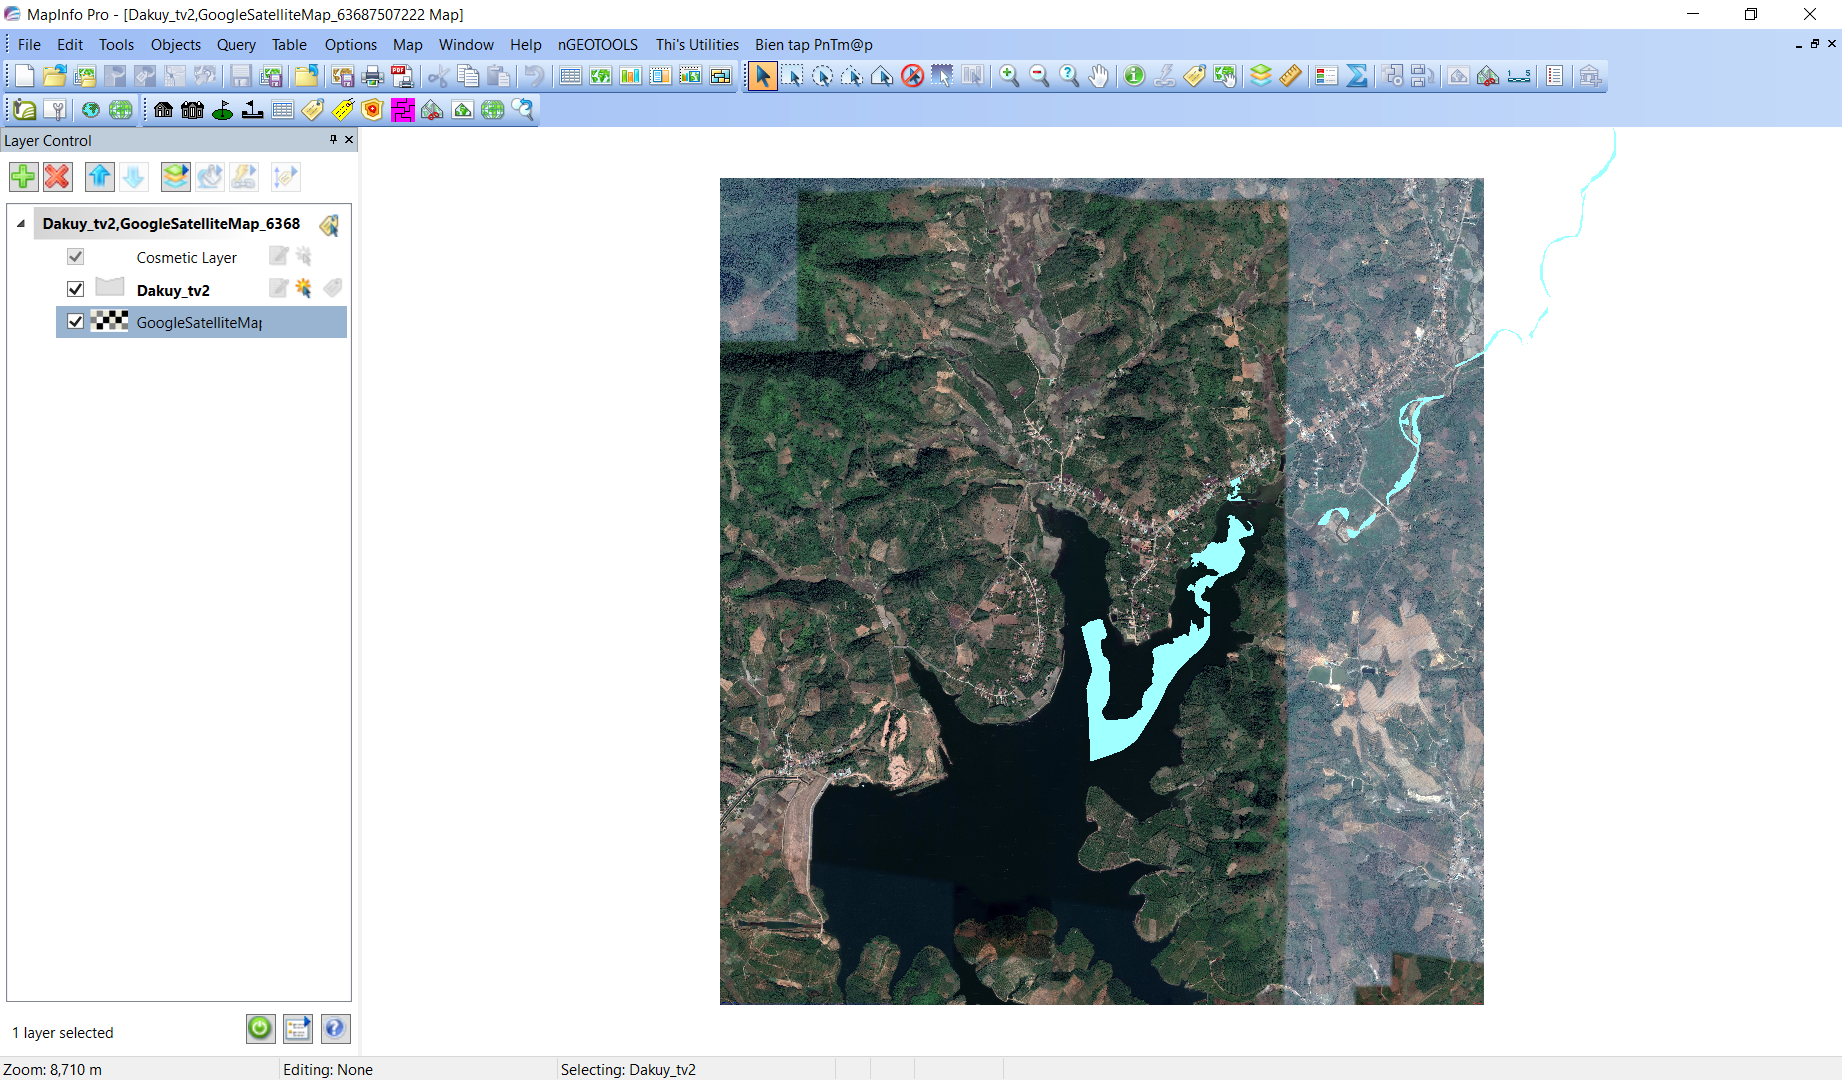 Với phần mềm Mapinfo, bạn có thể tải ảnh vệ tinh chi tiết từ Google để trực quan hóa dữ liệu địa lý. Bản đồ Lâm Đồng chẳng hạn, sẽ được hiển thị rõ ràng hơn bao giờ hết. Hãy tải ngay phần mềm bản đồ vệ tinh để thưởng thức cảm giác tuyệt vời này!